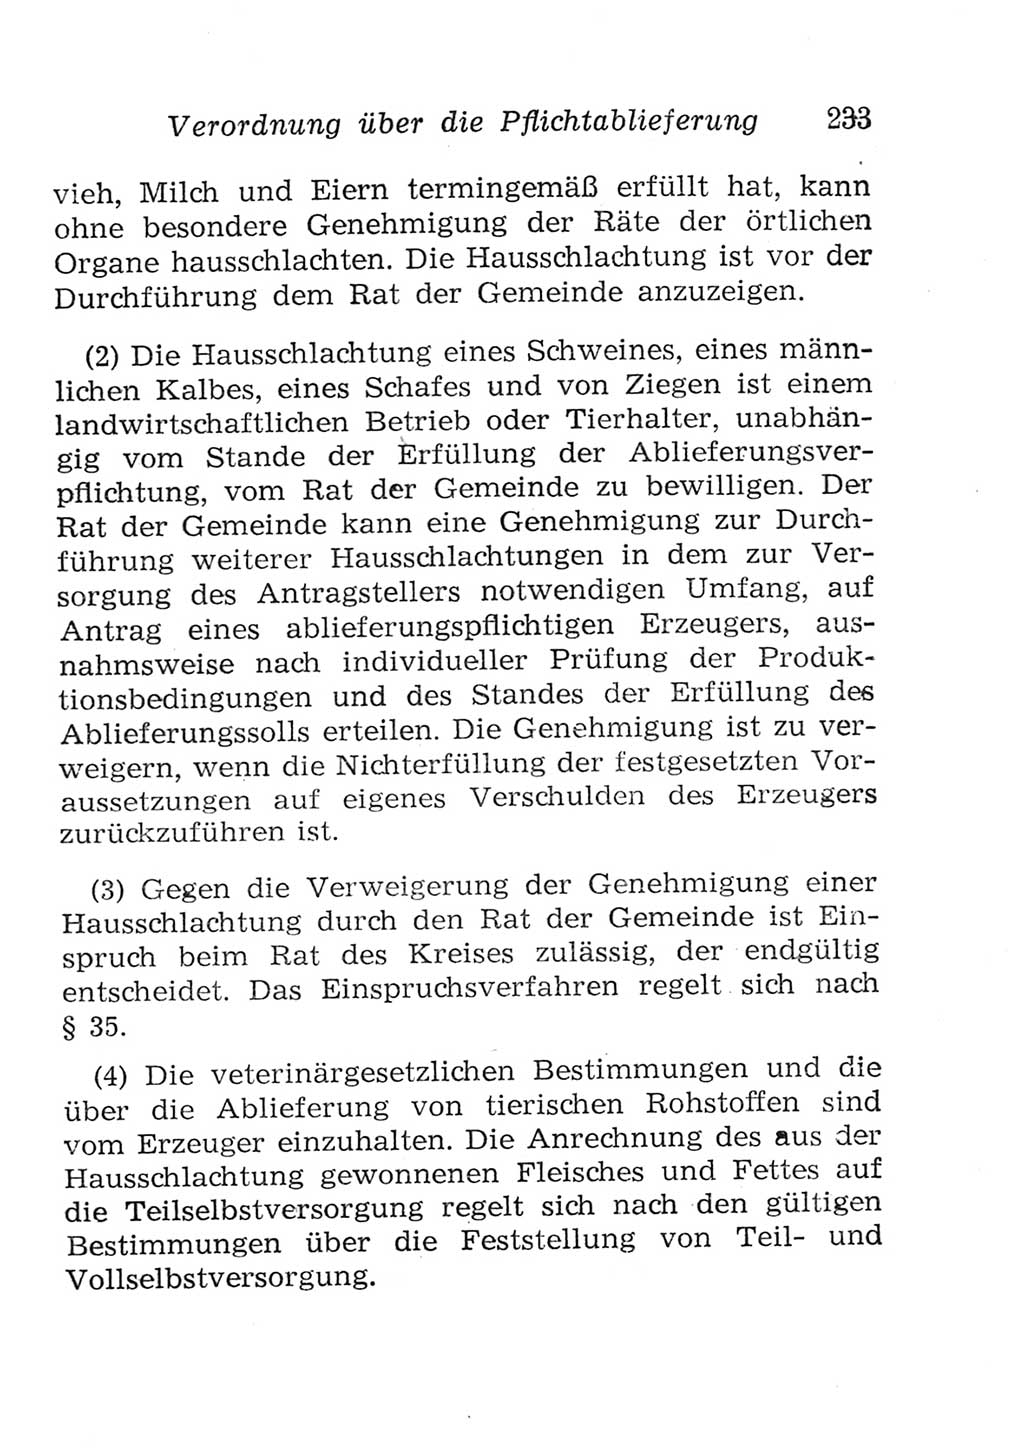 Strafgesetzbuch (StGB) und andere Strafgesetze [Deutsche Demokratische Republik (DDR)] 1957, Seite 233 (StGB Strafges. DDR 1957, S. 233)